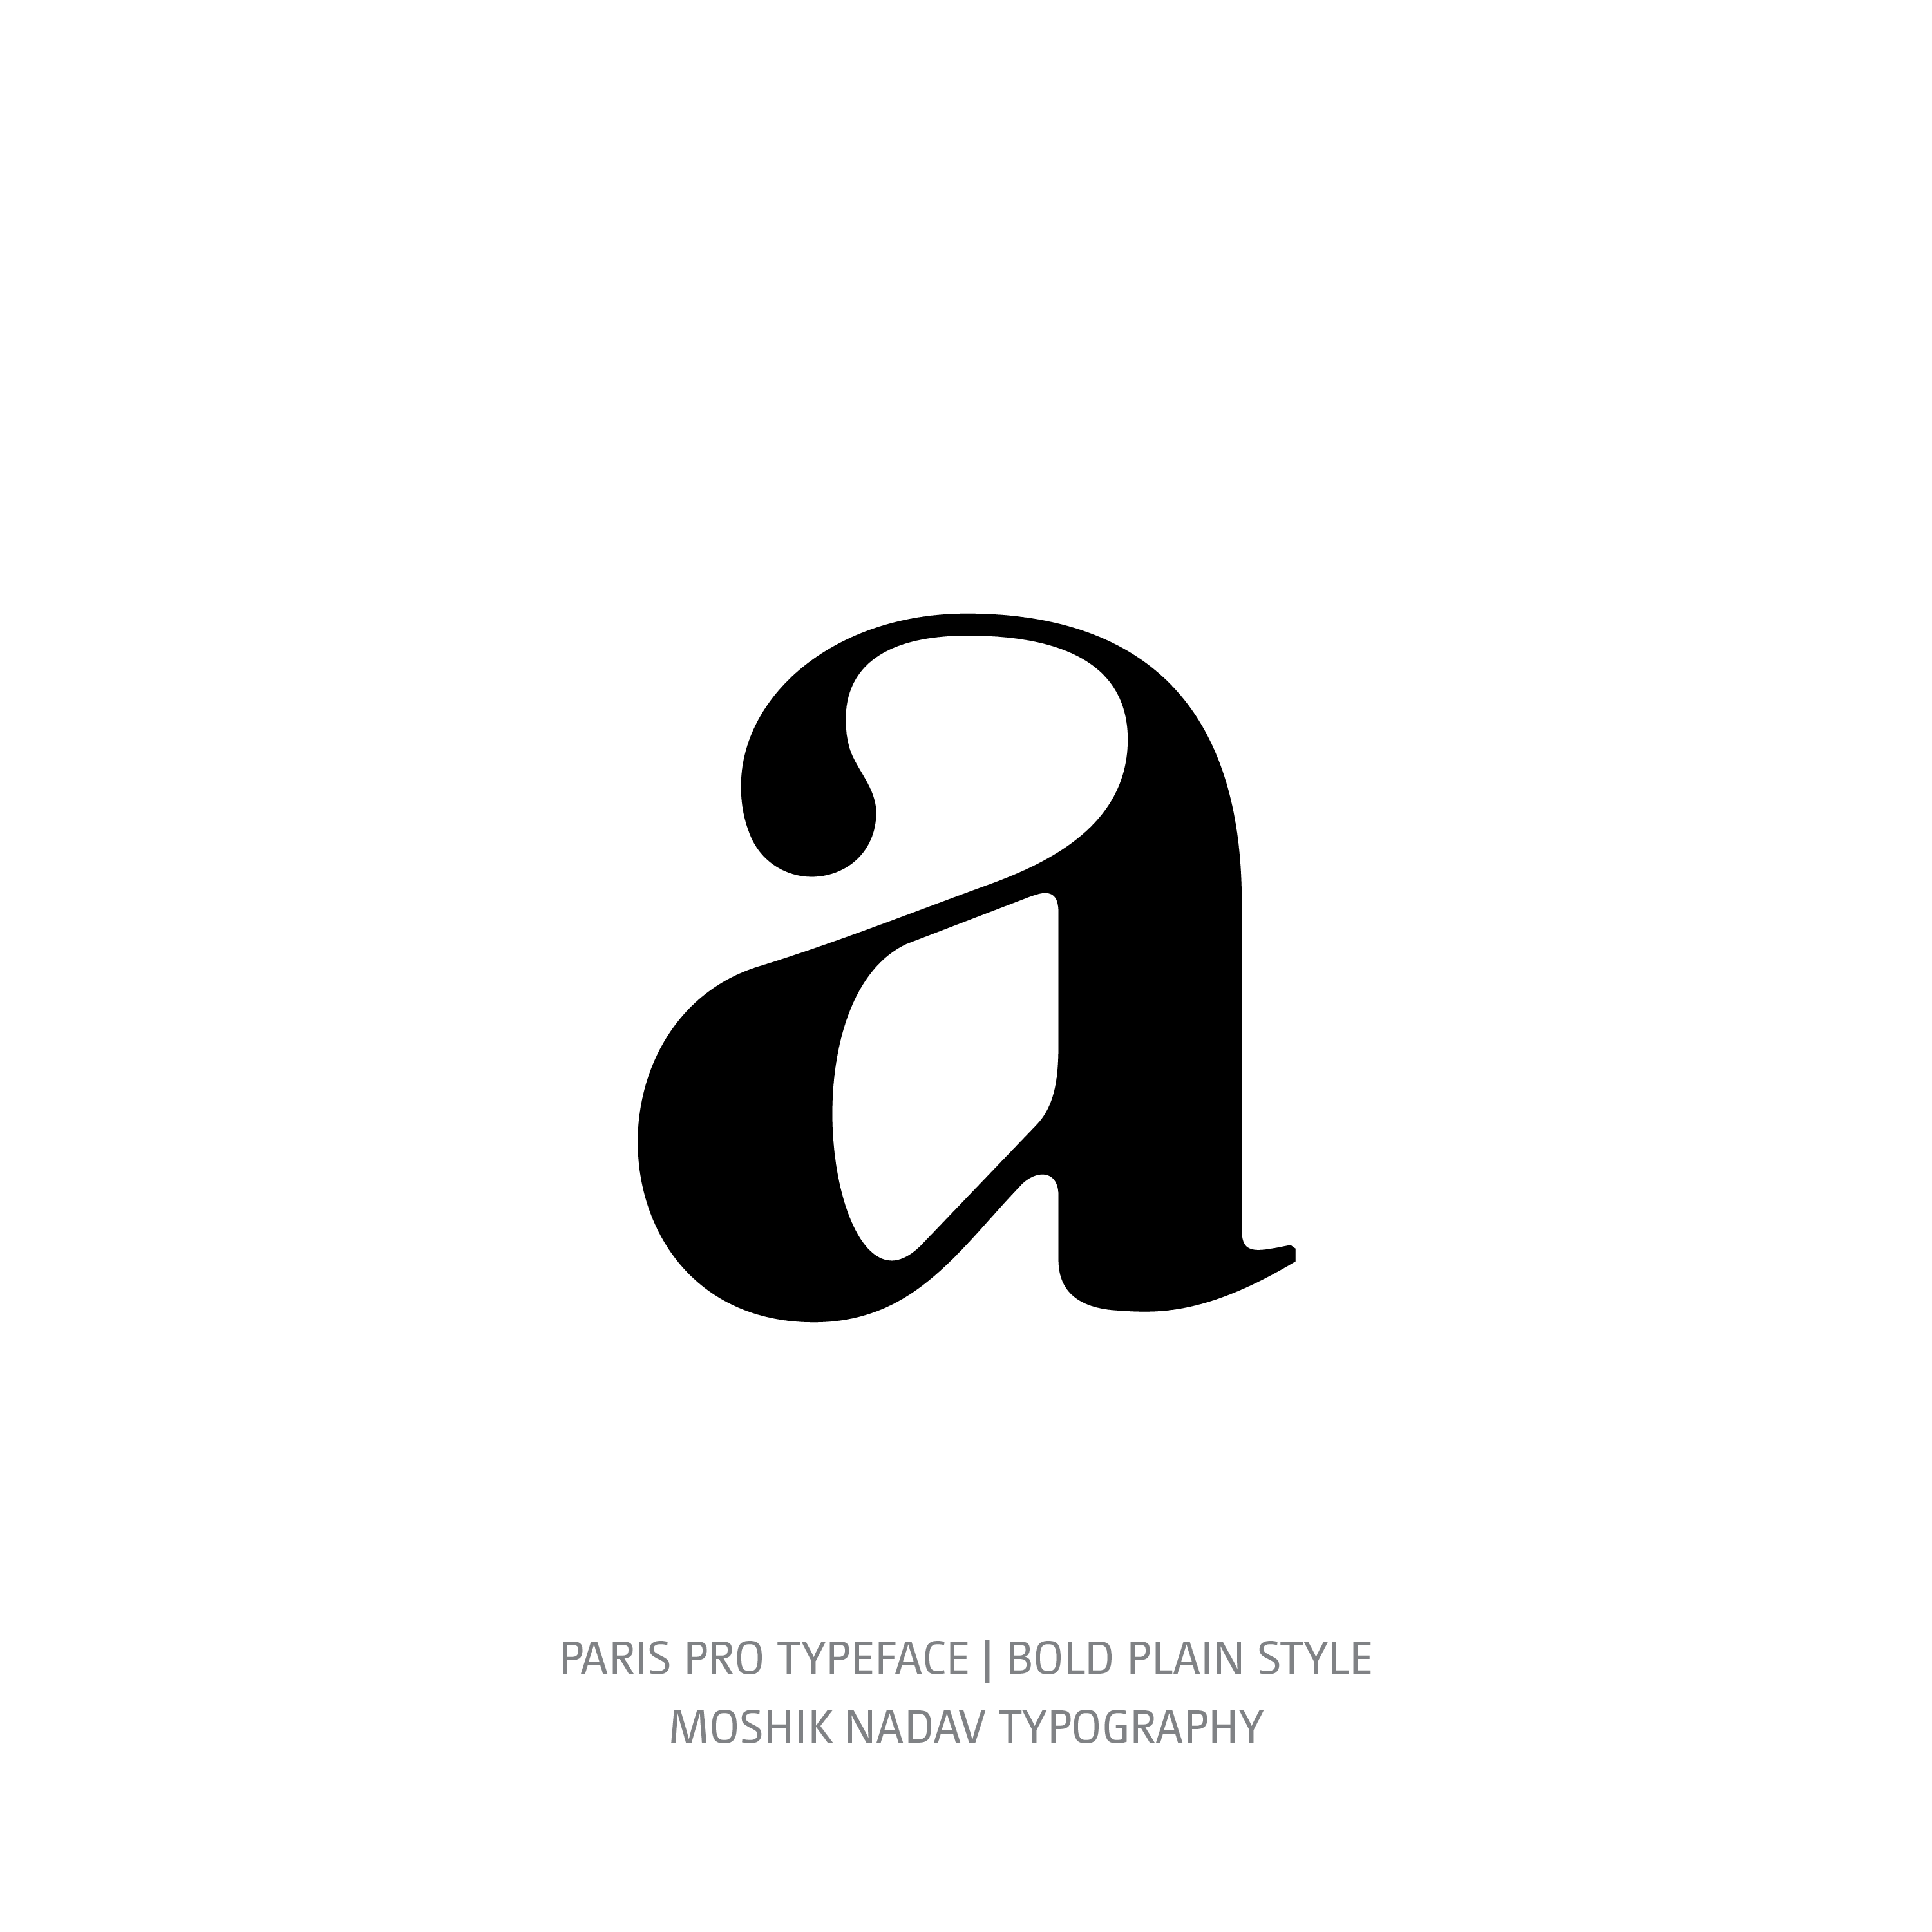 Paris Pro Typeface Bold Plain a